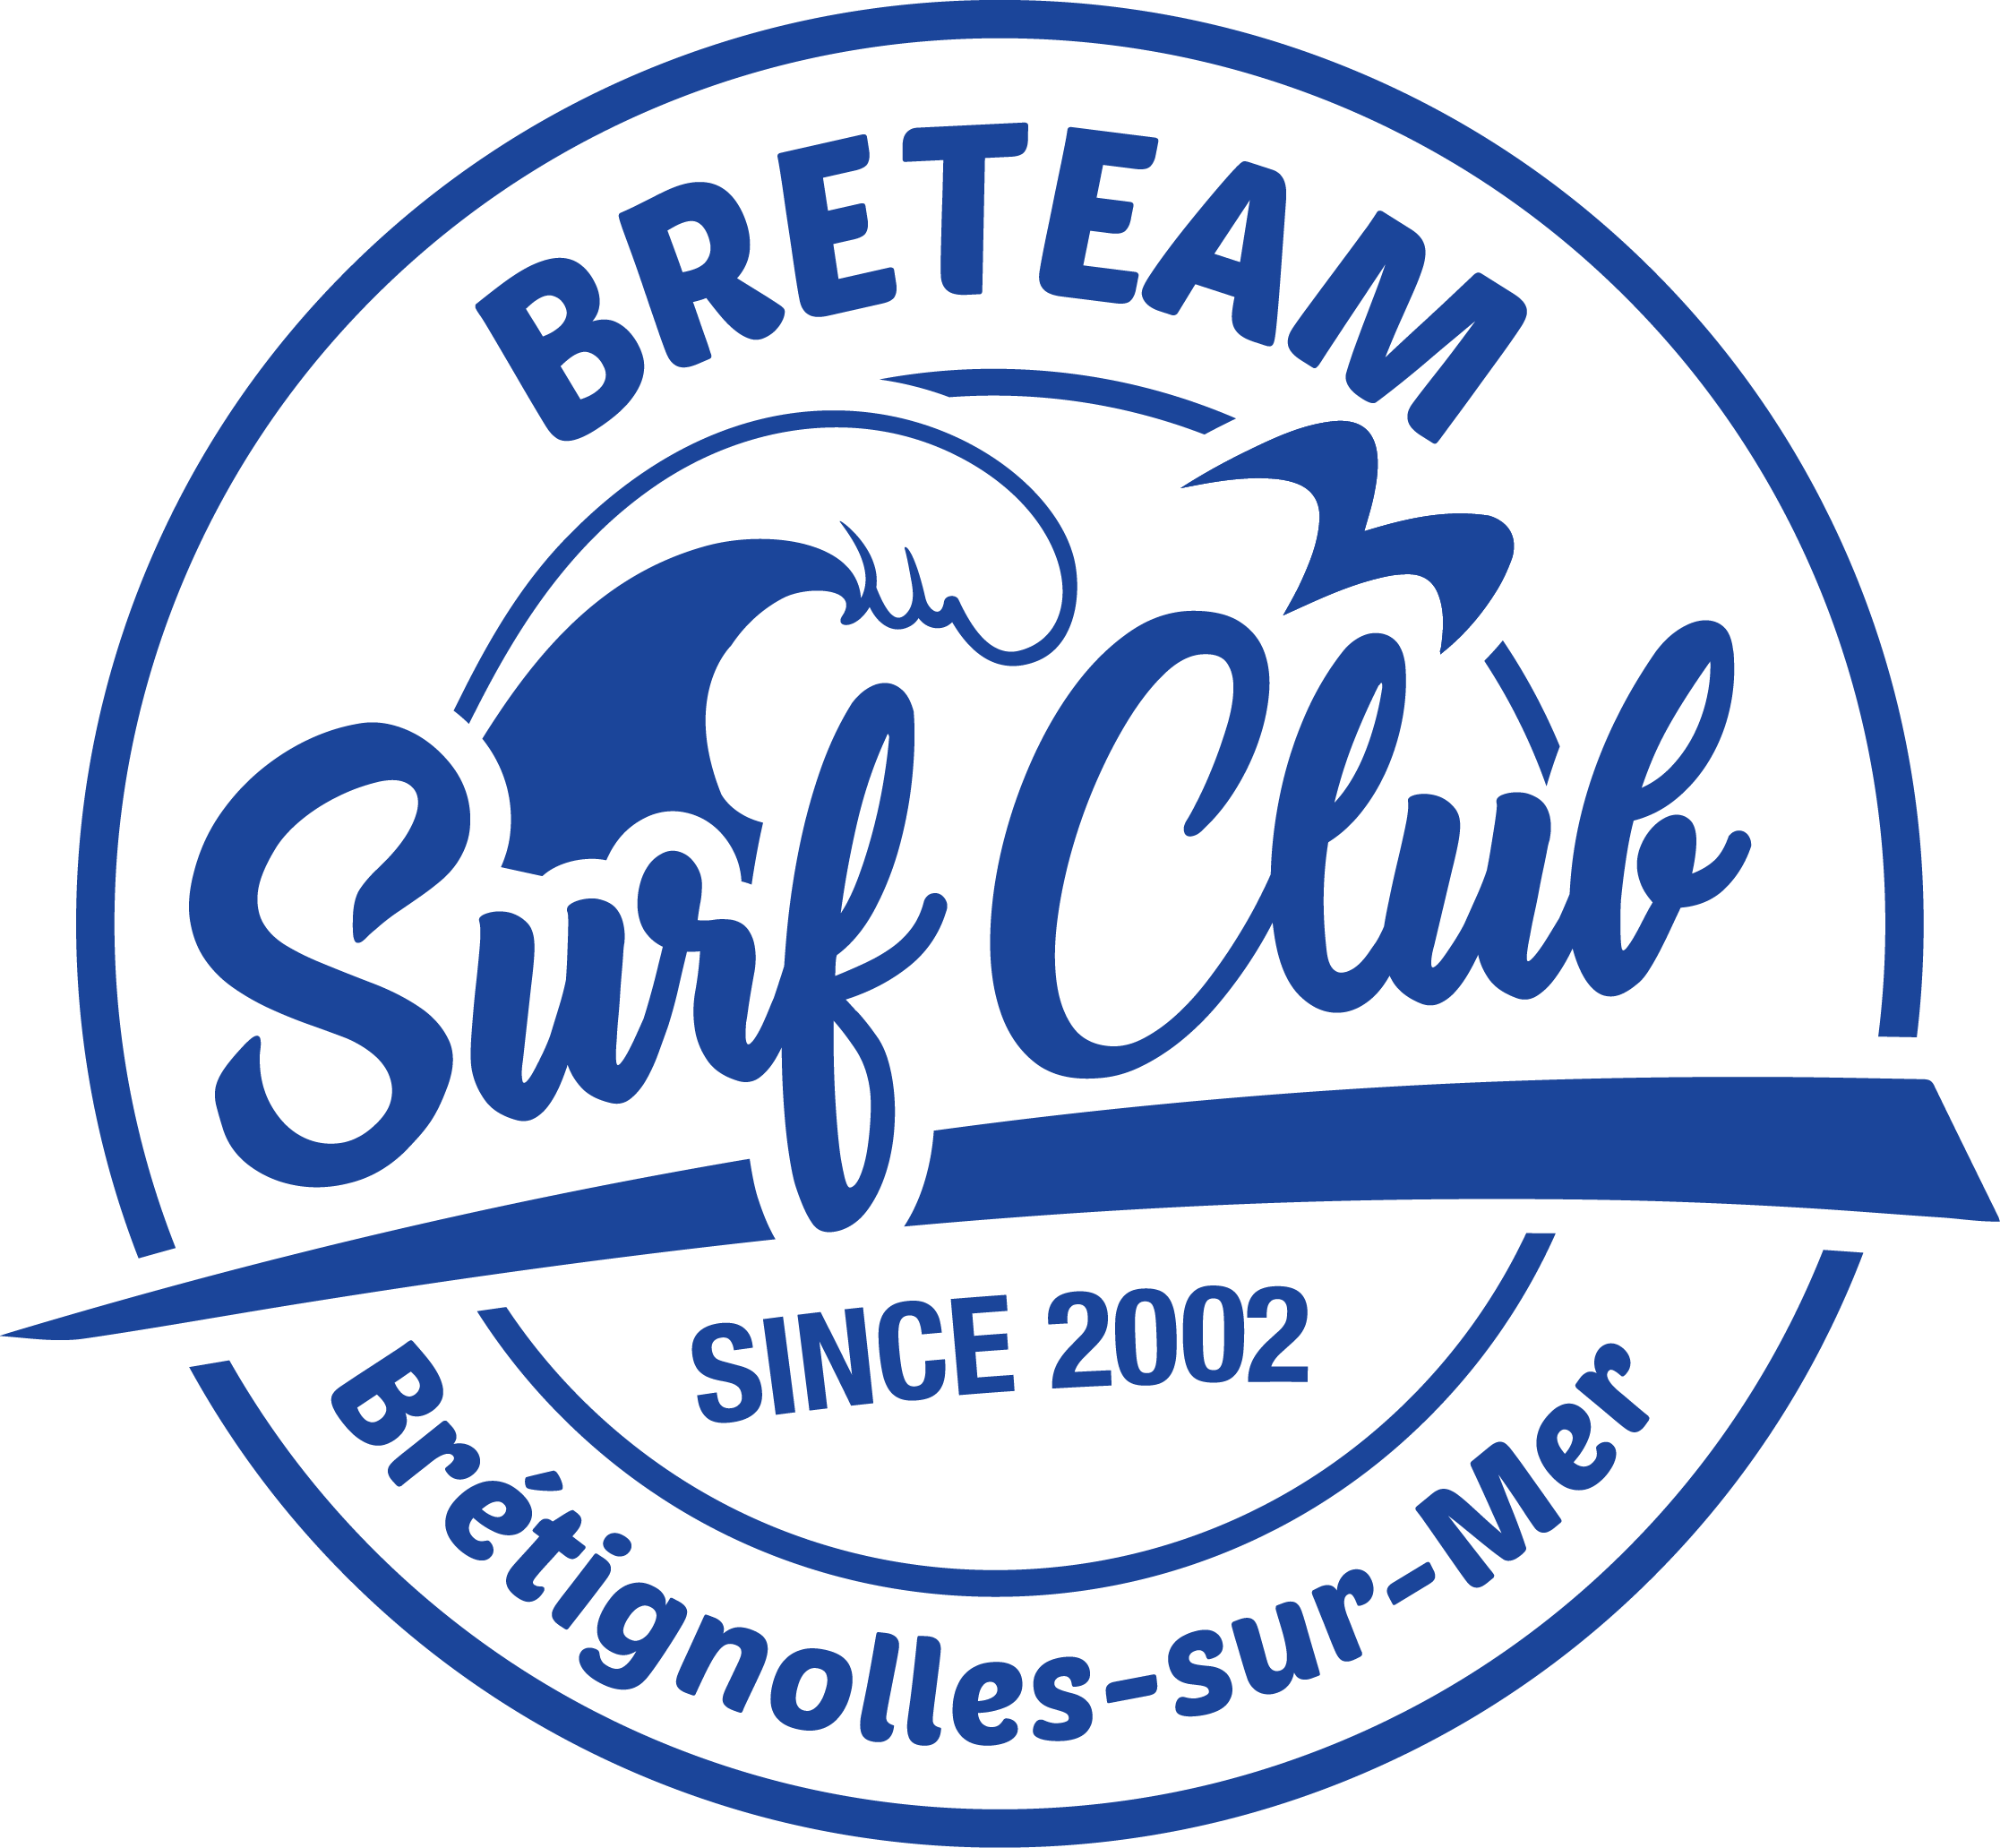 breteam_surf_club